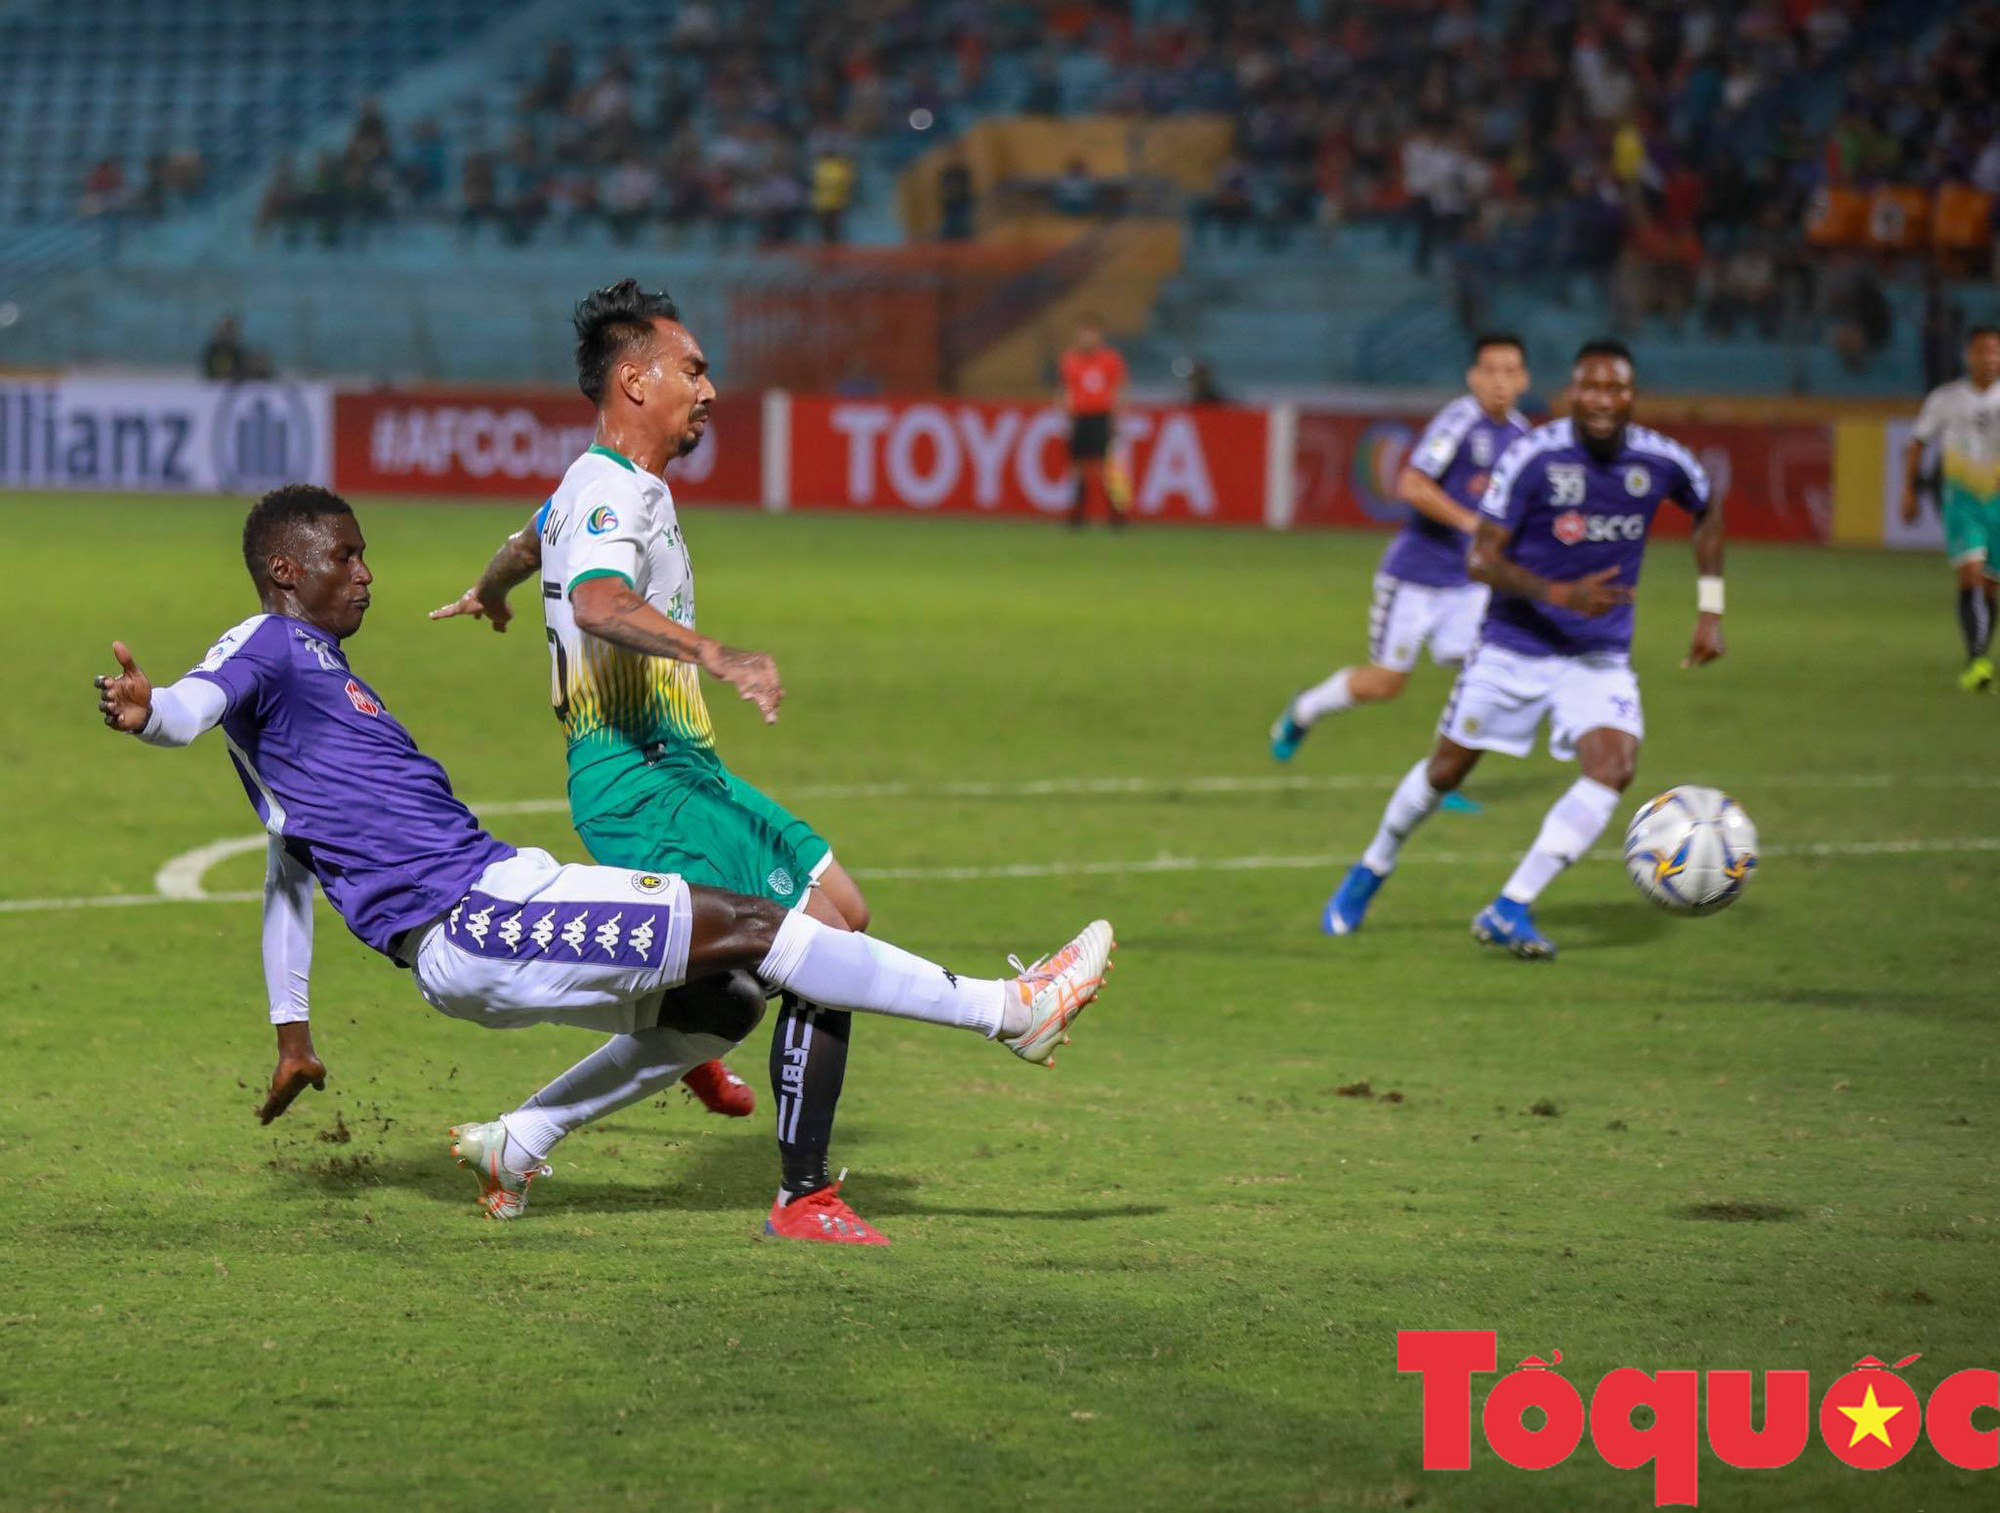 Văn Quyết sút trượt penalty, Hà Nội FC đánh rơi chiến thắng trên sân nhà - Ảnh 1.